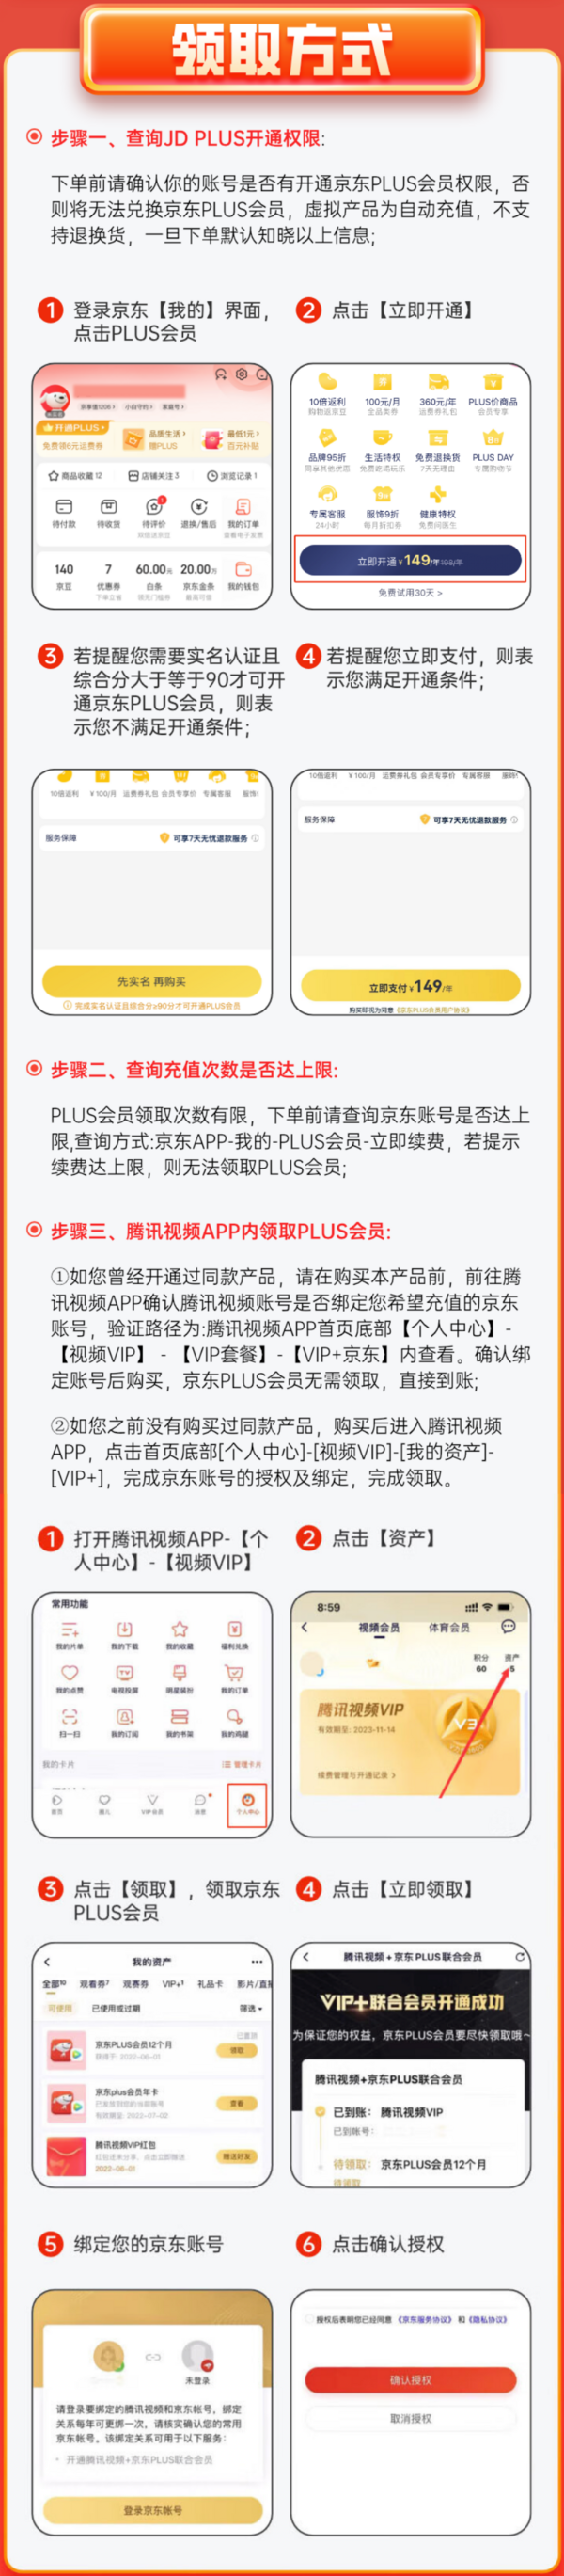 Tencent Video 腾讯视频 VIP会员年卡+京东PLUS会员年卡